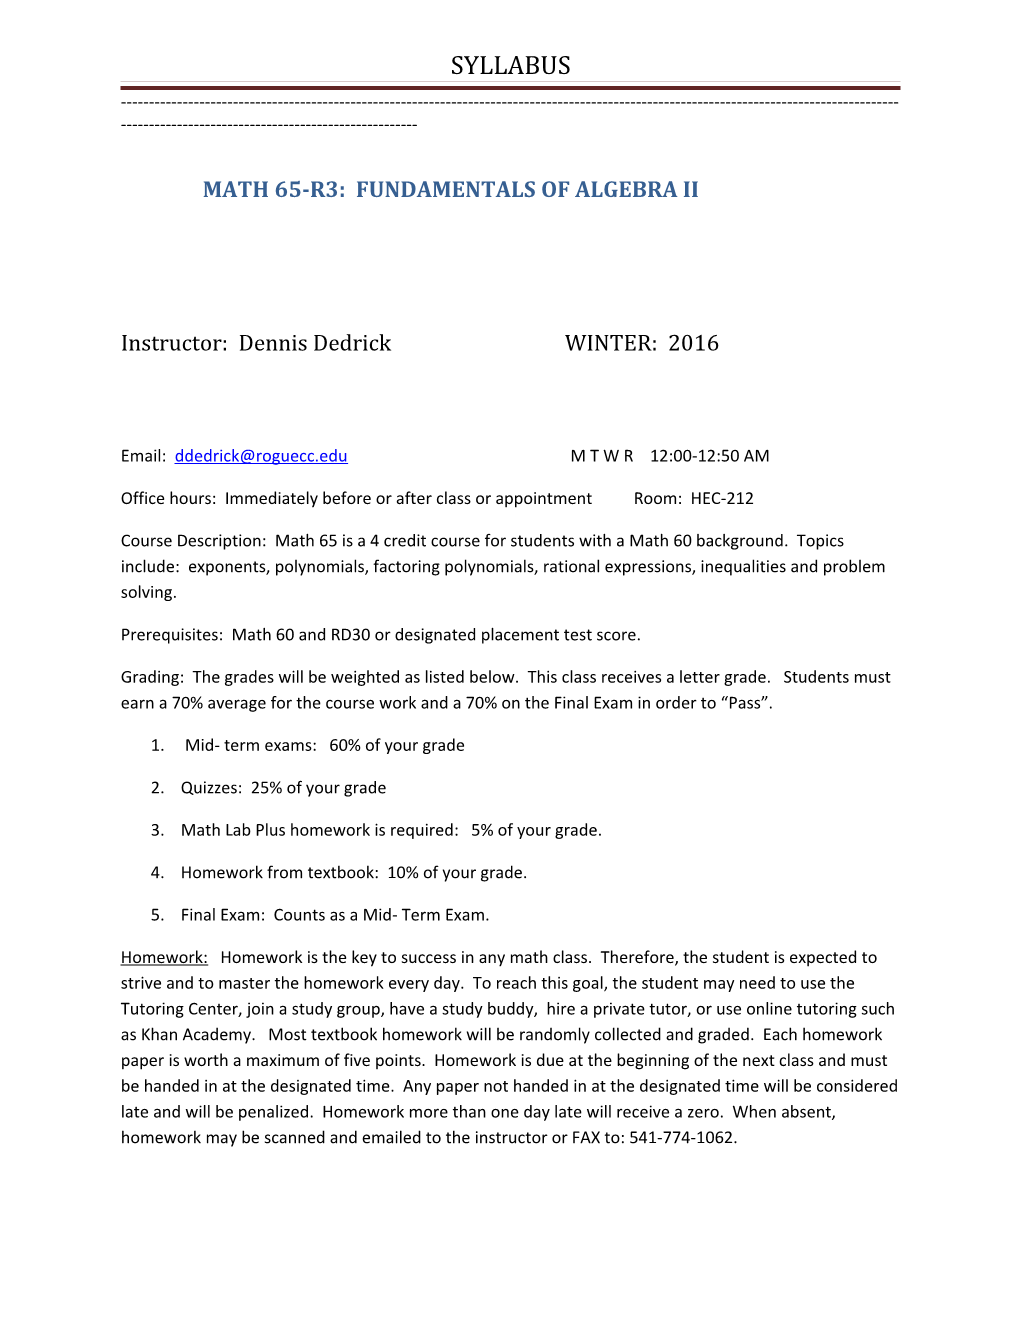 Math 65-R3: Fundamentals of Algebra Ii